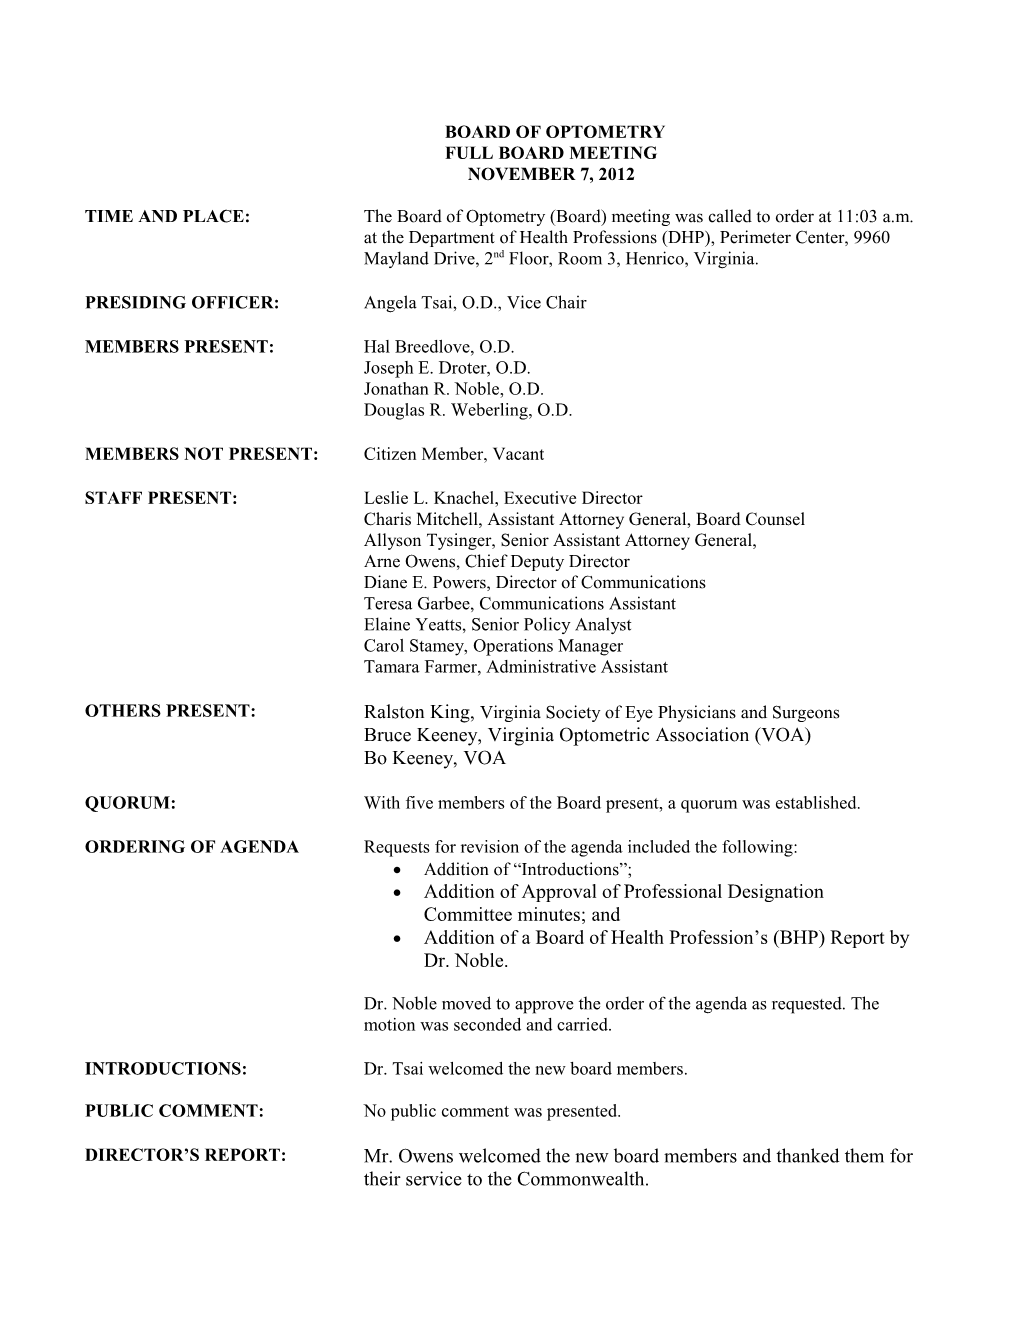 Board of Optometery Minutes Nov 2012